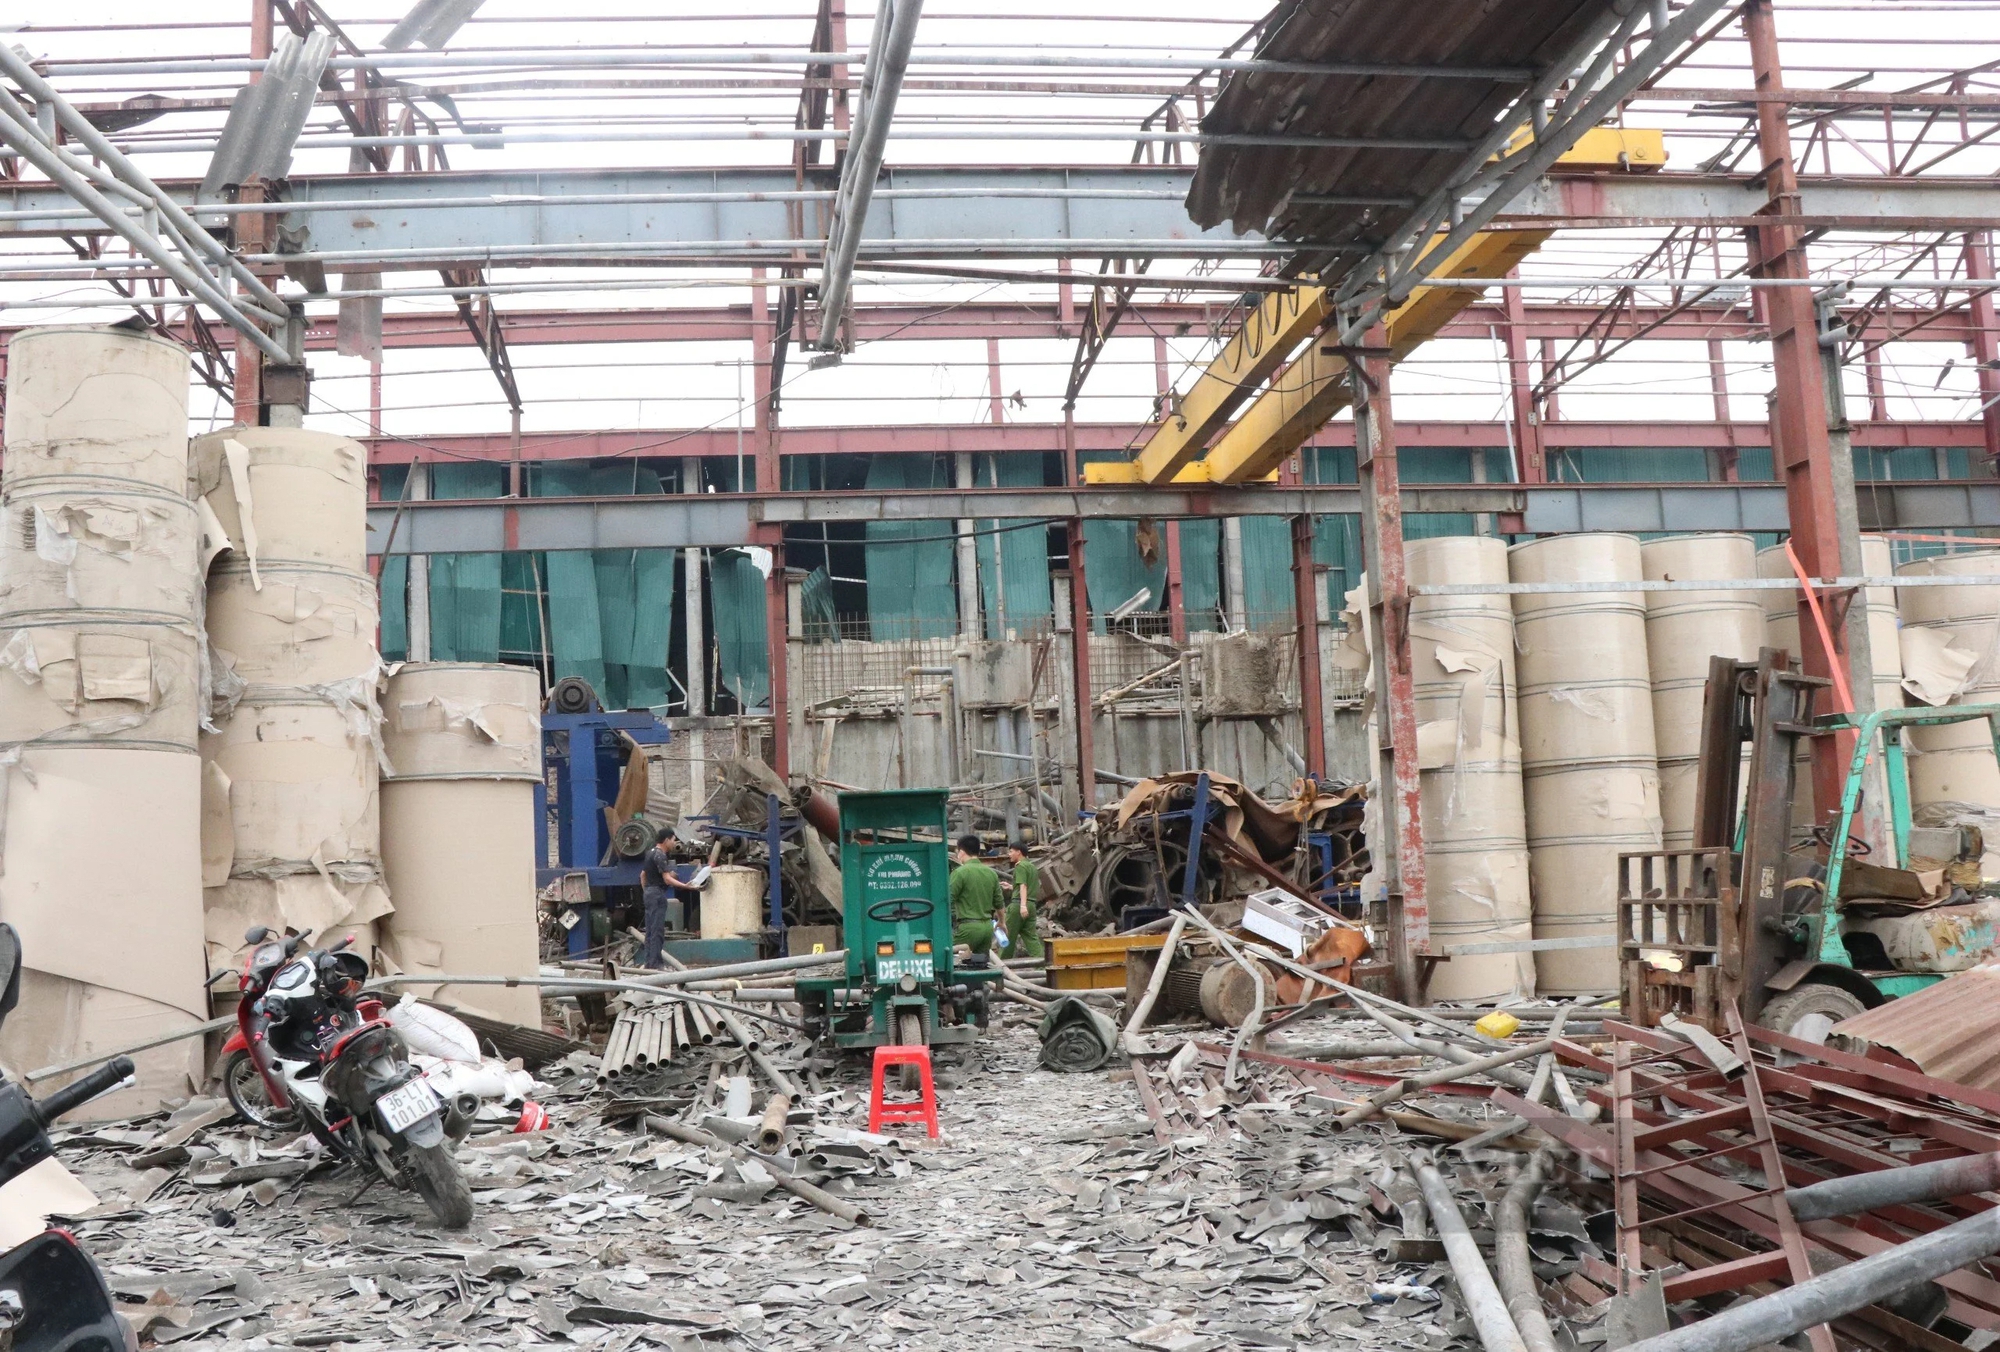 Hiện trường tan hoang sau vụ nổ khiến 1 người tử vong, 2 người bị thương tại khu công nghiệp ở Bắc Ninh- Ảnh 4.